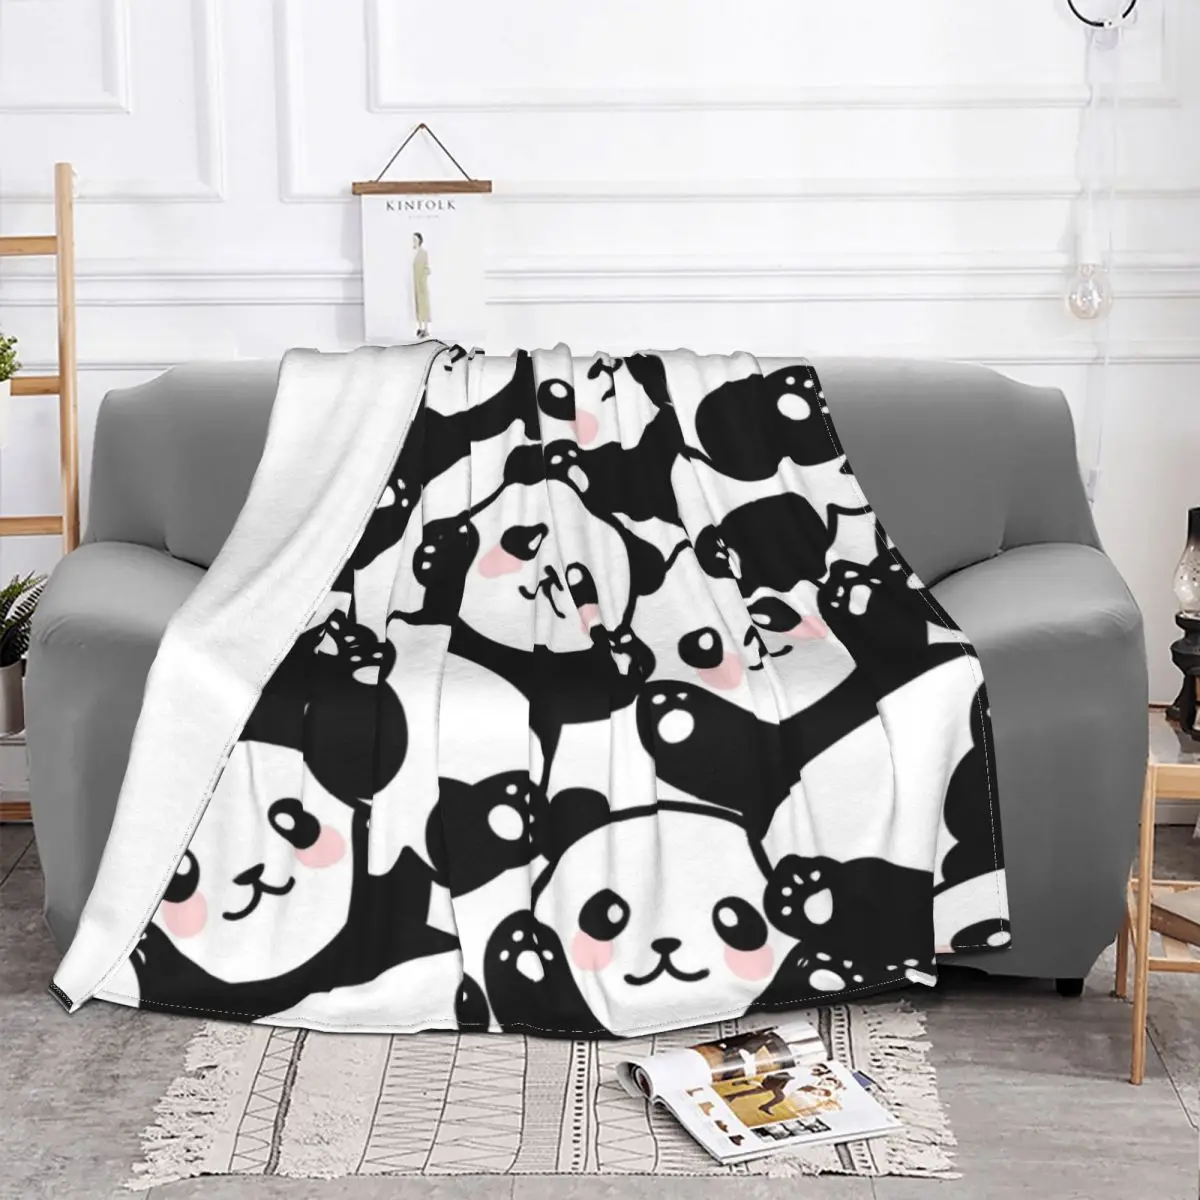 

Одеяло "Панда" Бархатный текстиль Декор мультфильм Животные Природа многофункциональные мягкие одеяла для дома спальни одеяло